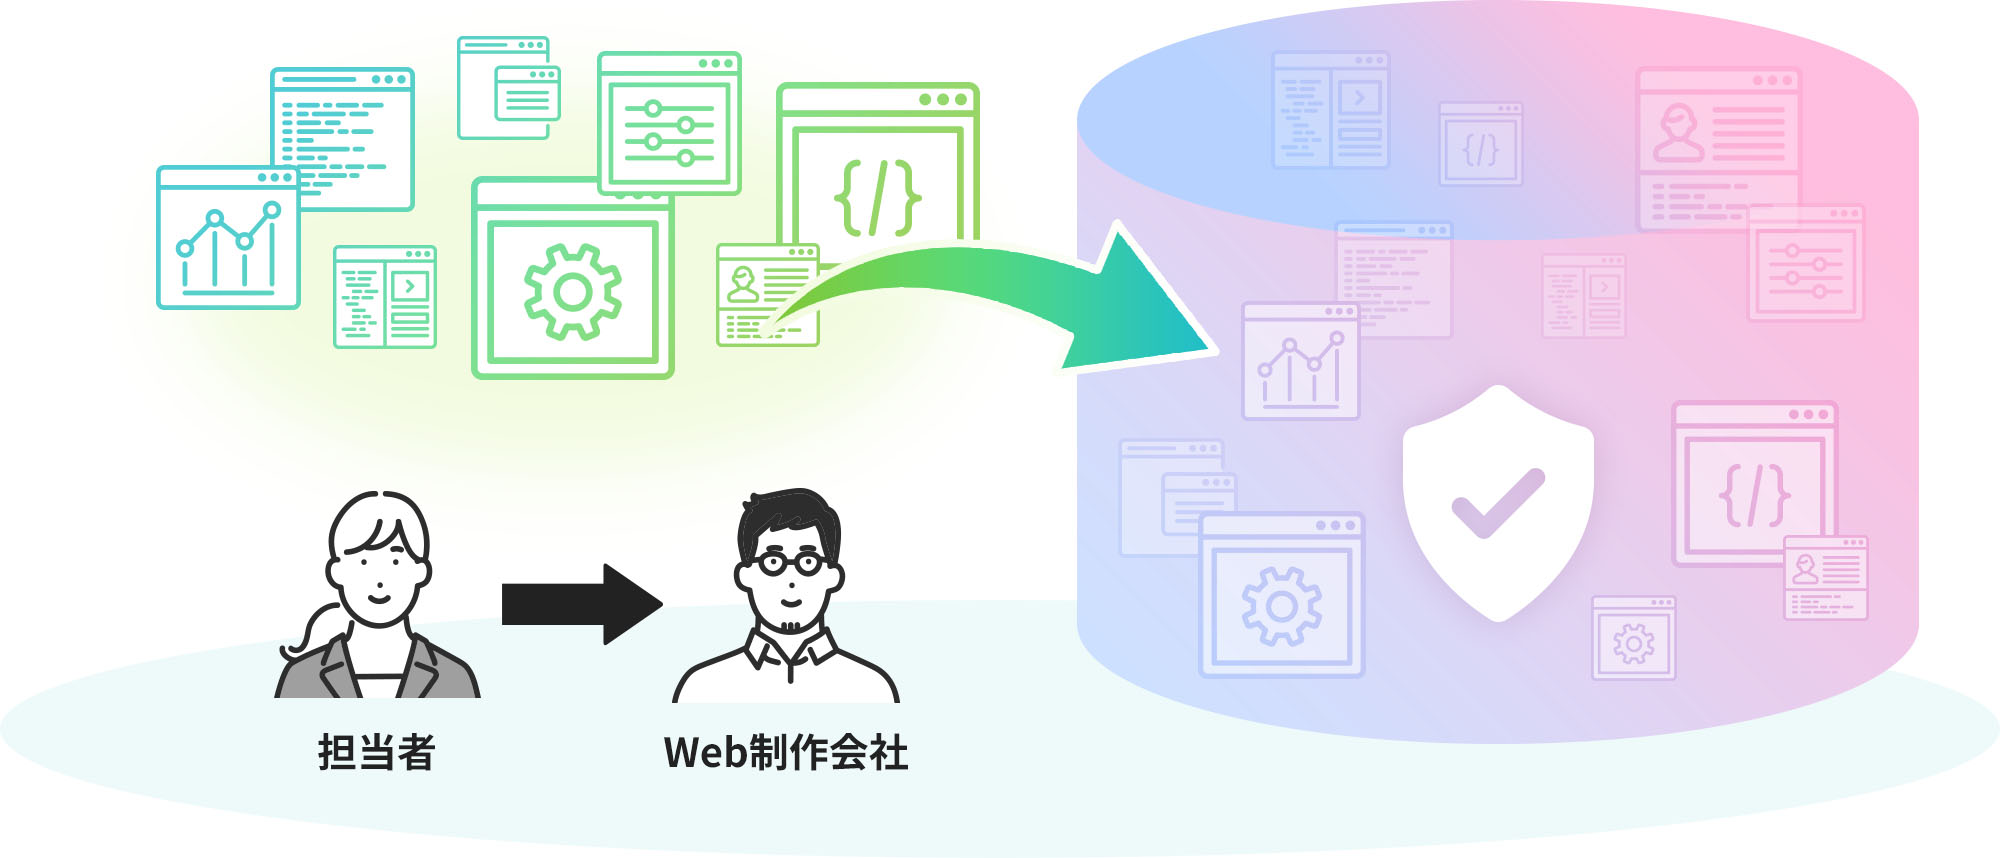 サイトの担当者と、委託先のWeb制作会社の体制は指示したまま、サイトをシェアウィズのサーバーストレージに集約する概念図。